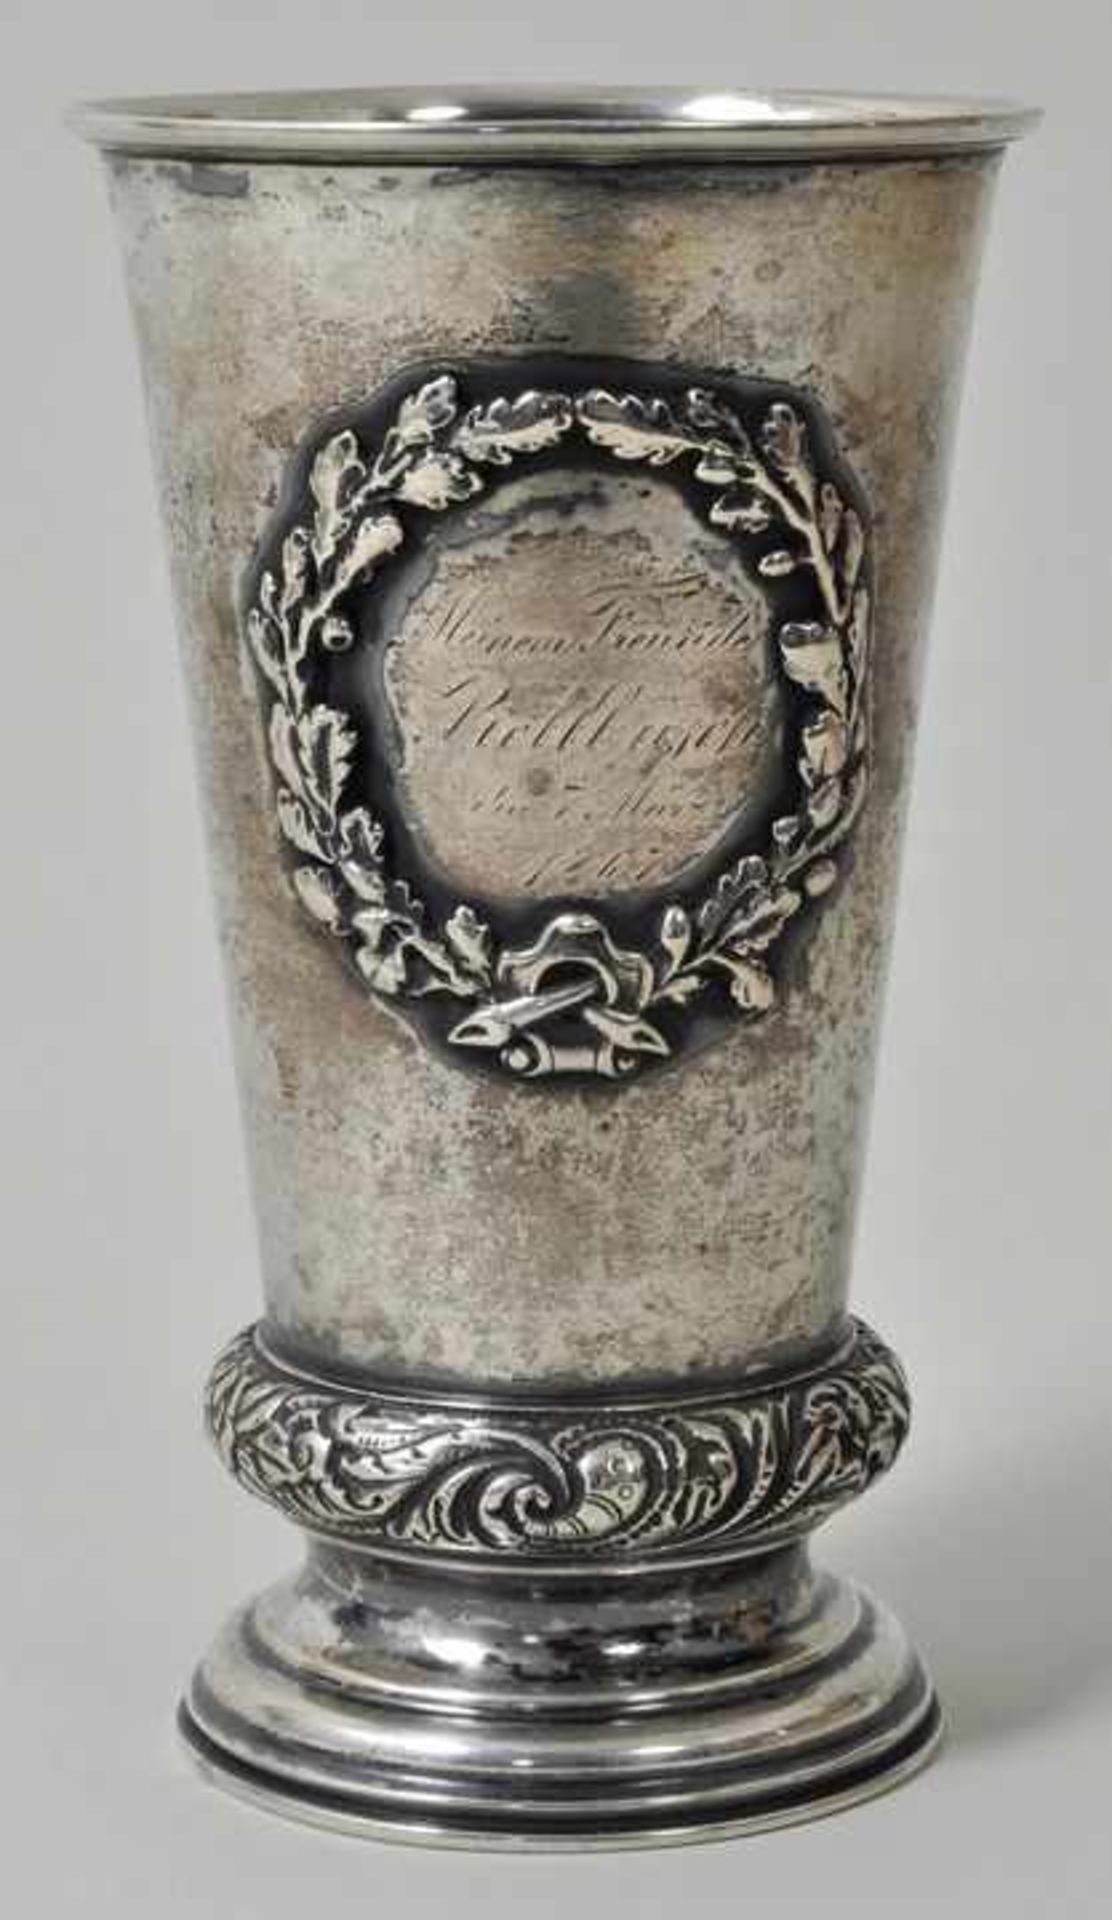 Fußbecher, 2. H. 19. Jh. Silber, gedrückt. Ranft in Blattwerk getrieben, auf der Schauseite